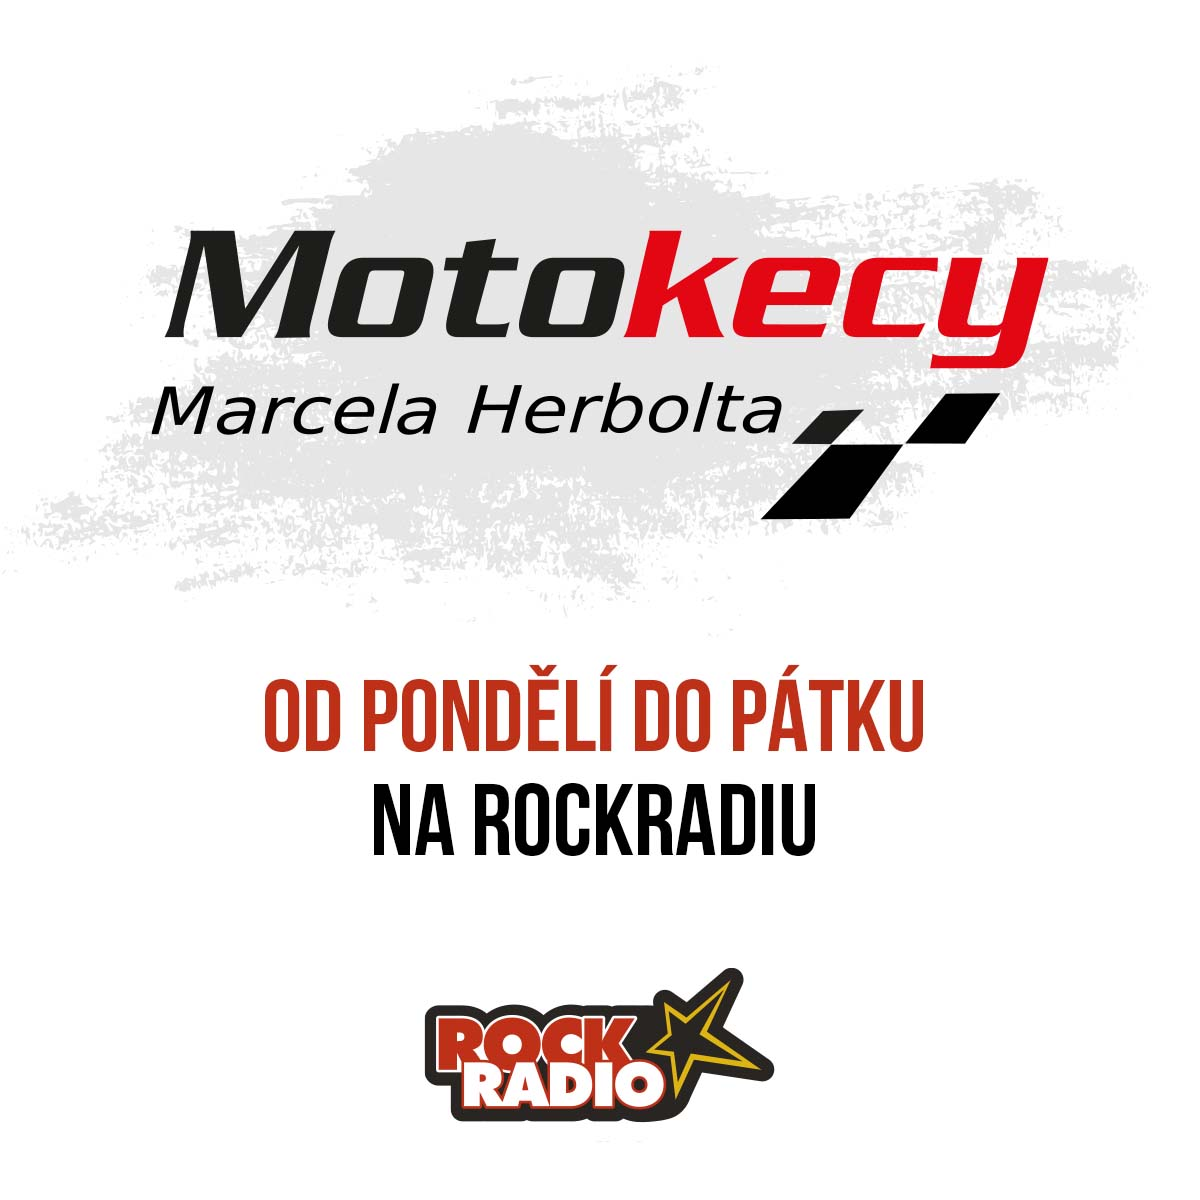 Motokecy Marcela Herbolta na úterý 26. září